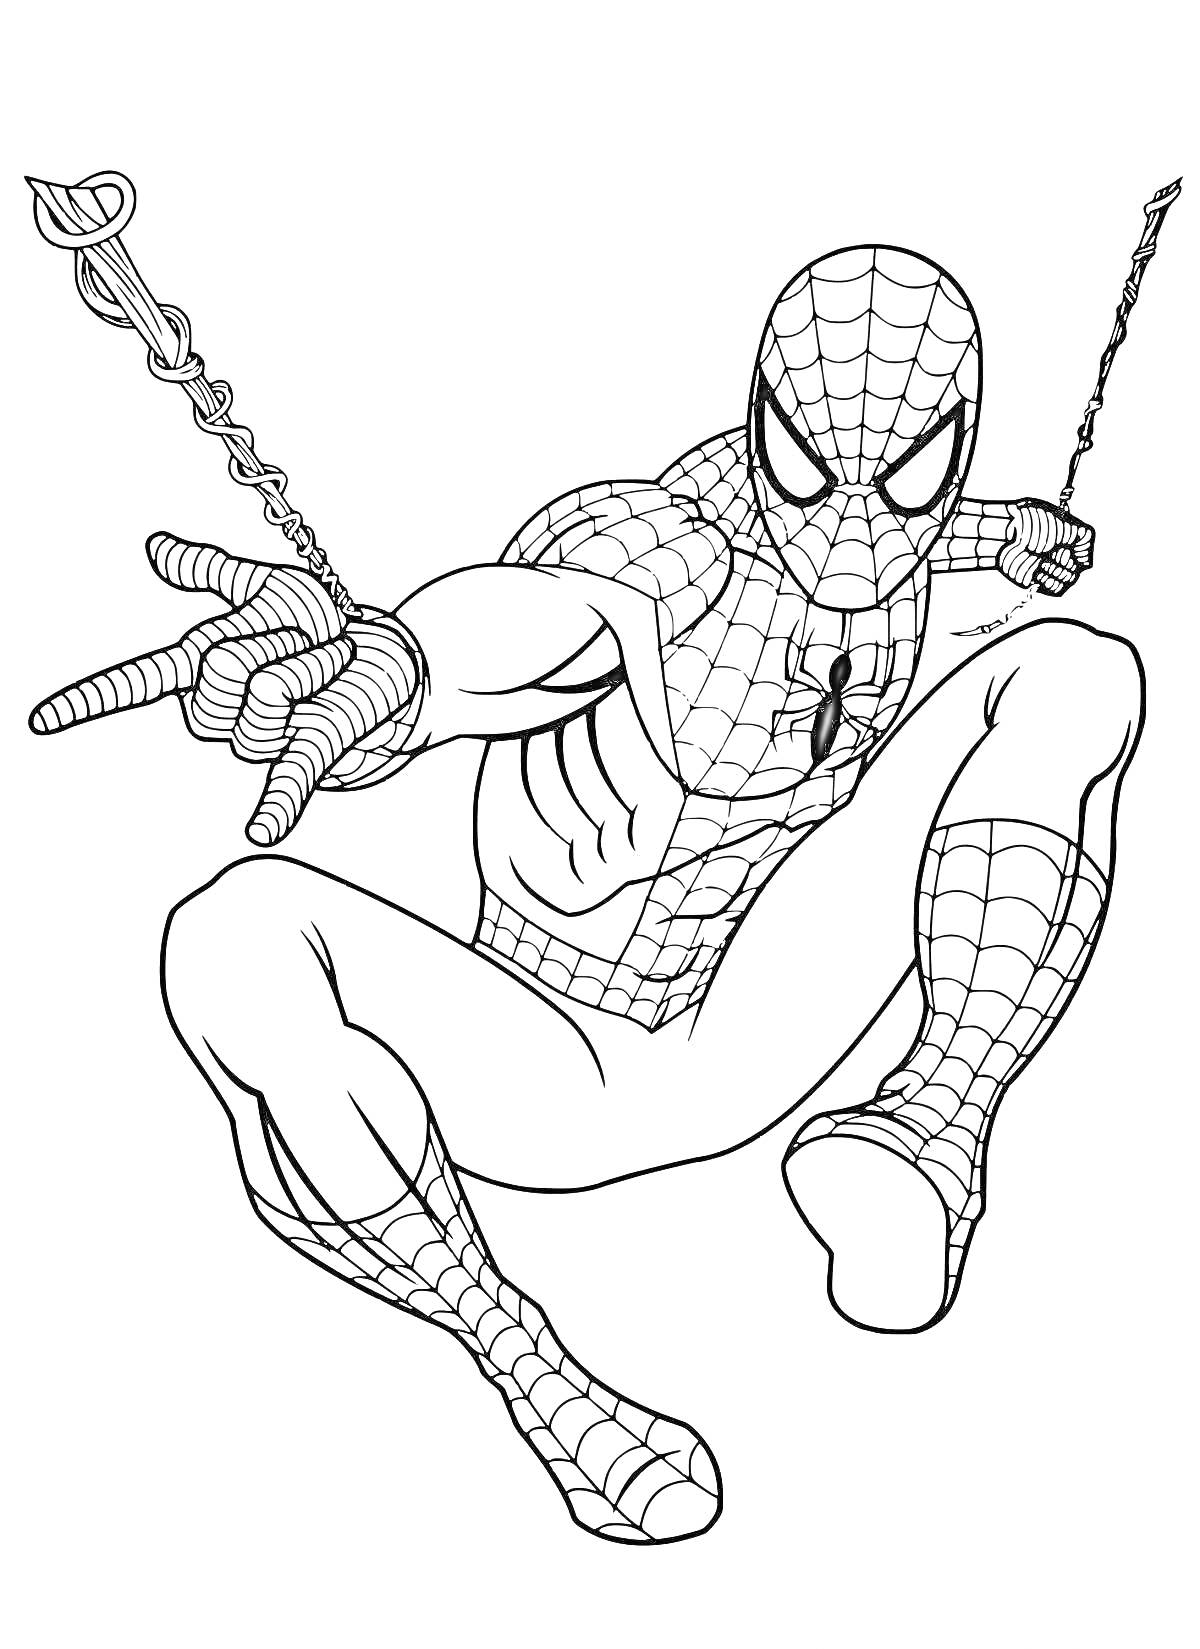 Человек-Паук выпускает паутину и раскачивается на паутине с обеих рук.